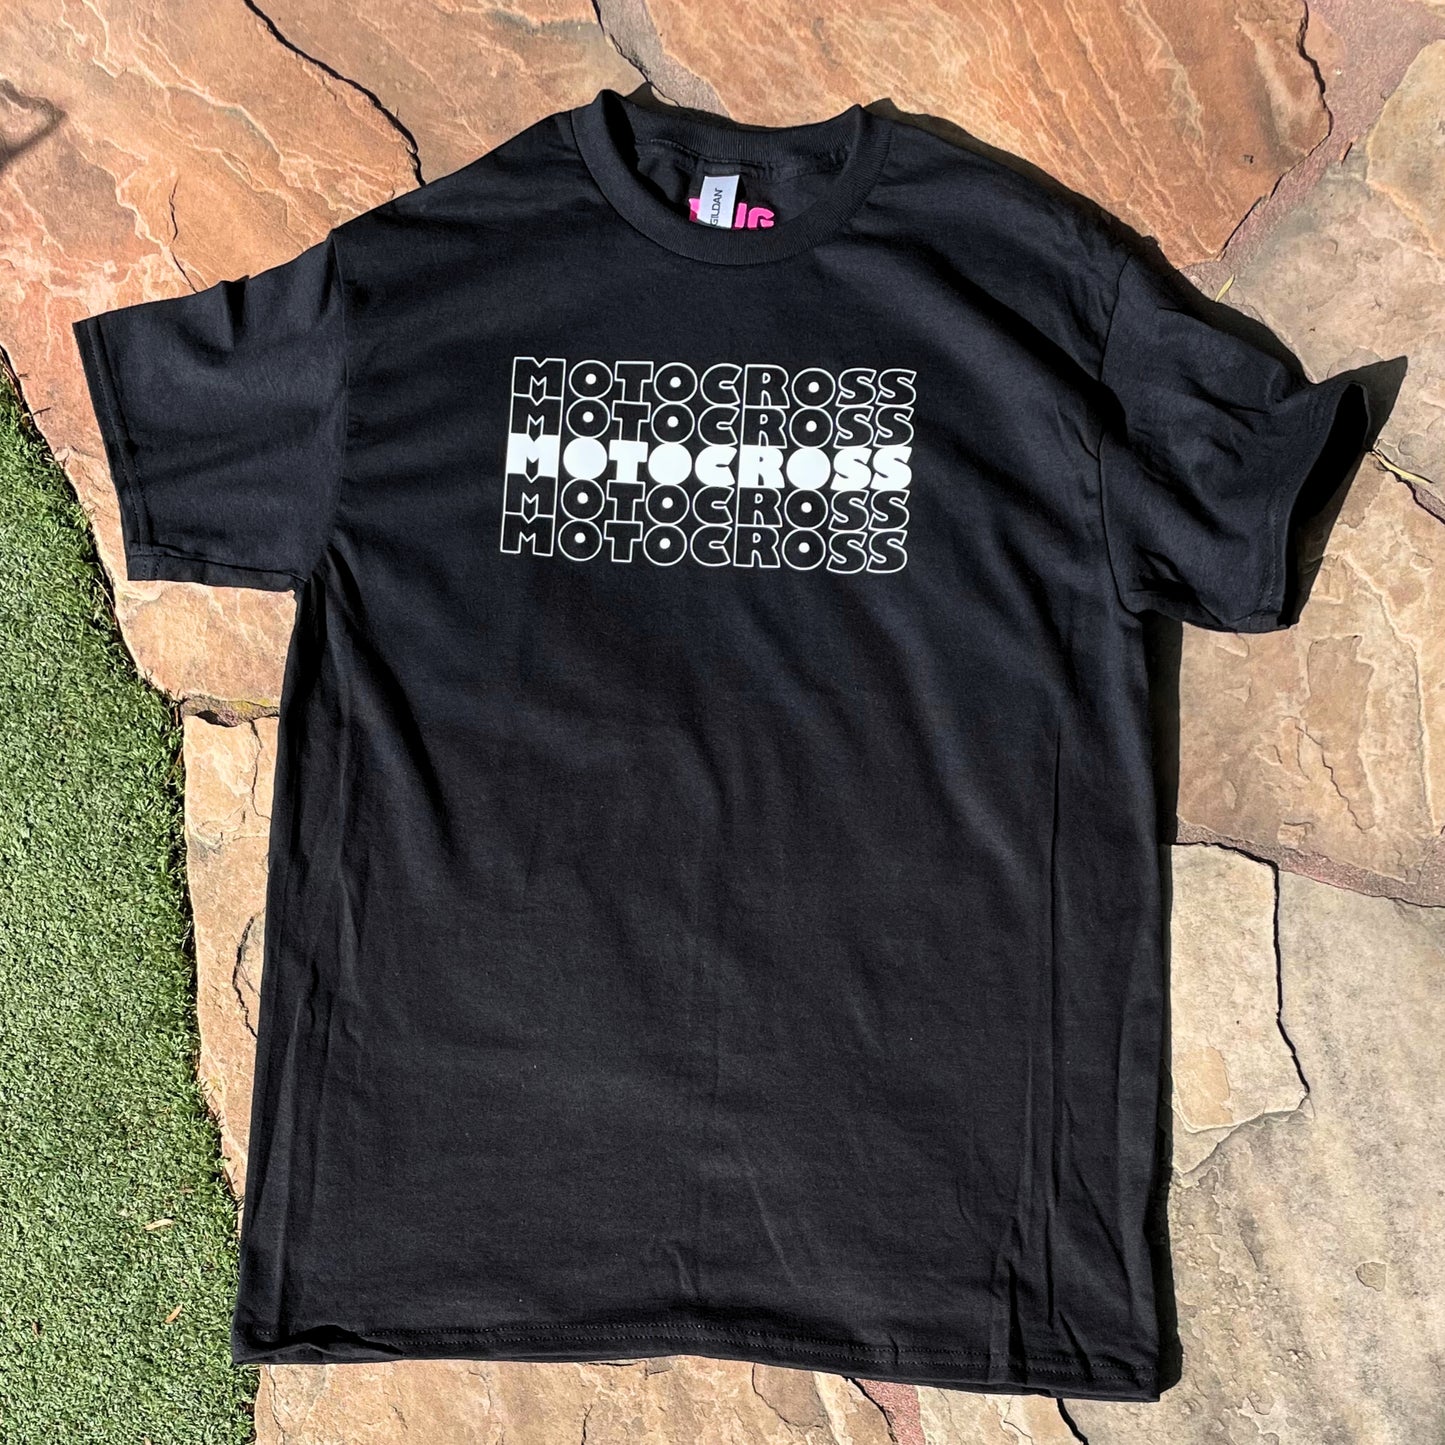 Motocross x5 T-Shirt